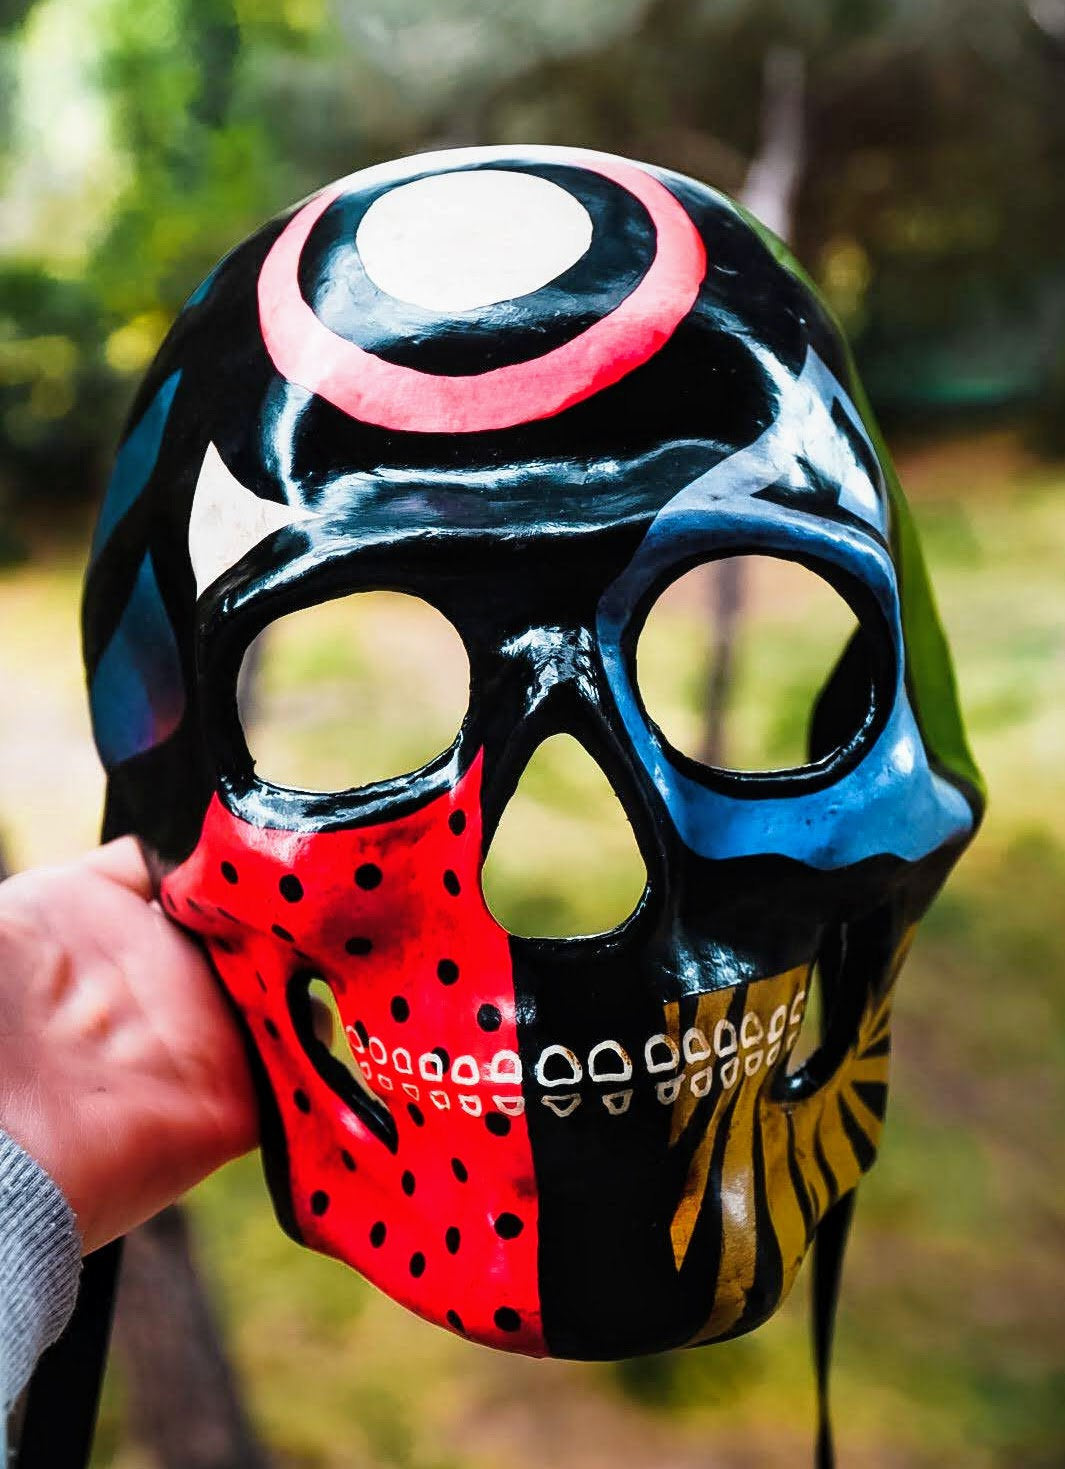 Mask ready - Skull mask Red Black lights venetian style